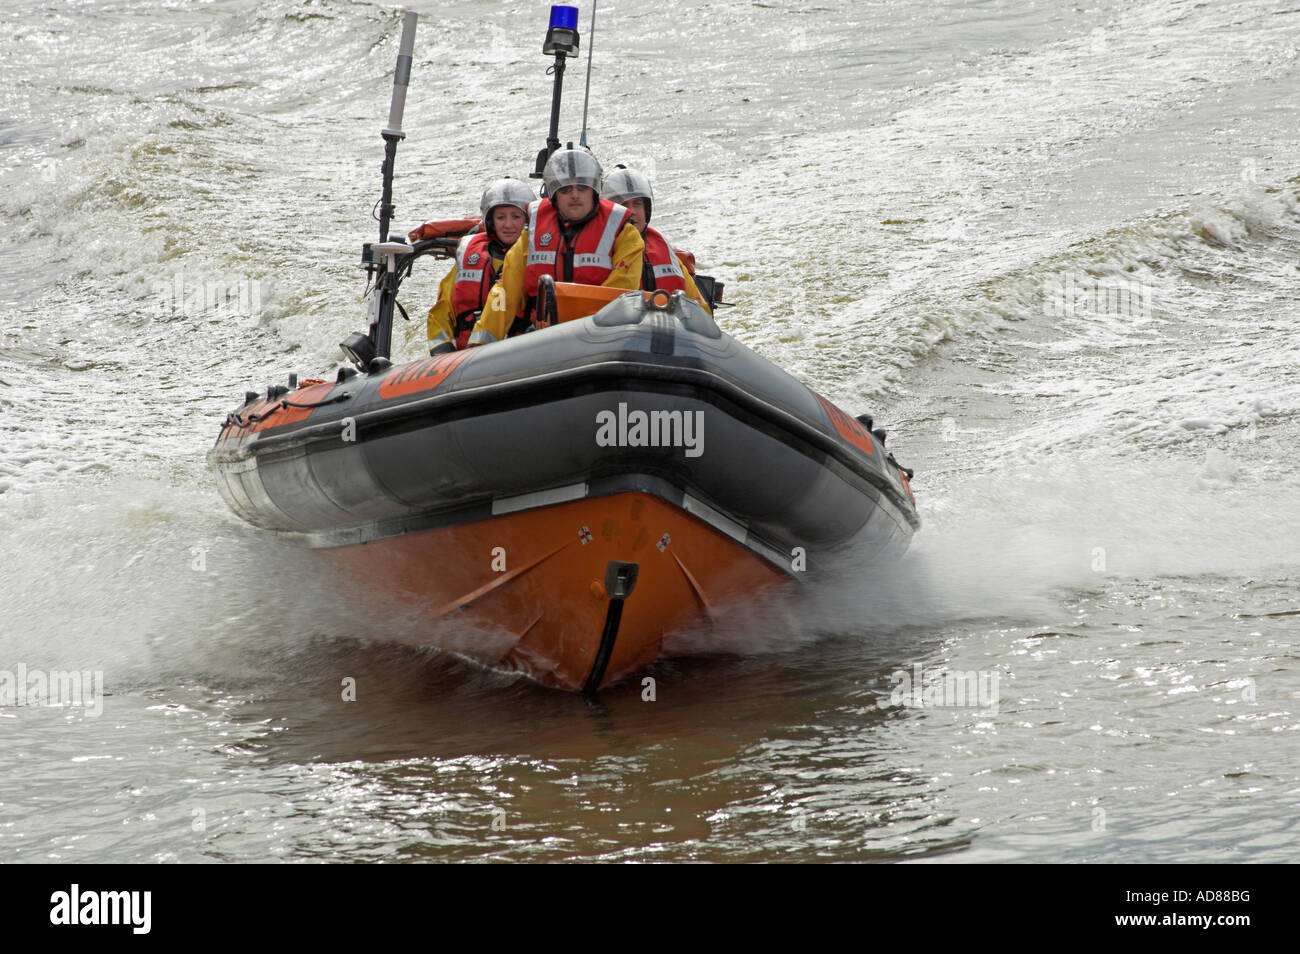 Royal National Lifeboat Institute classe atlantique en cours dans le clapot Banque D'Images